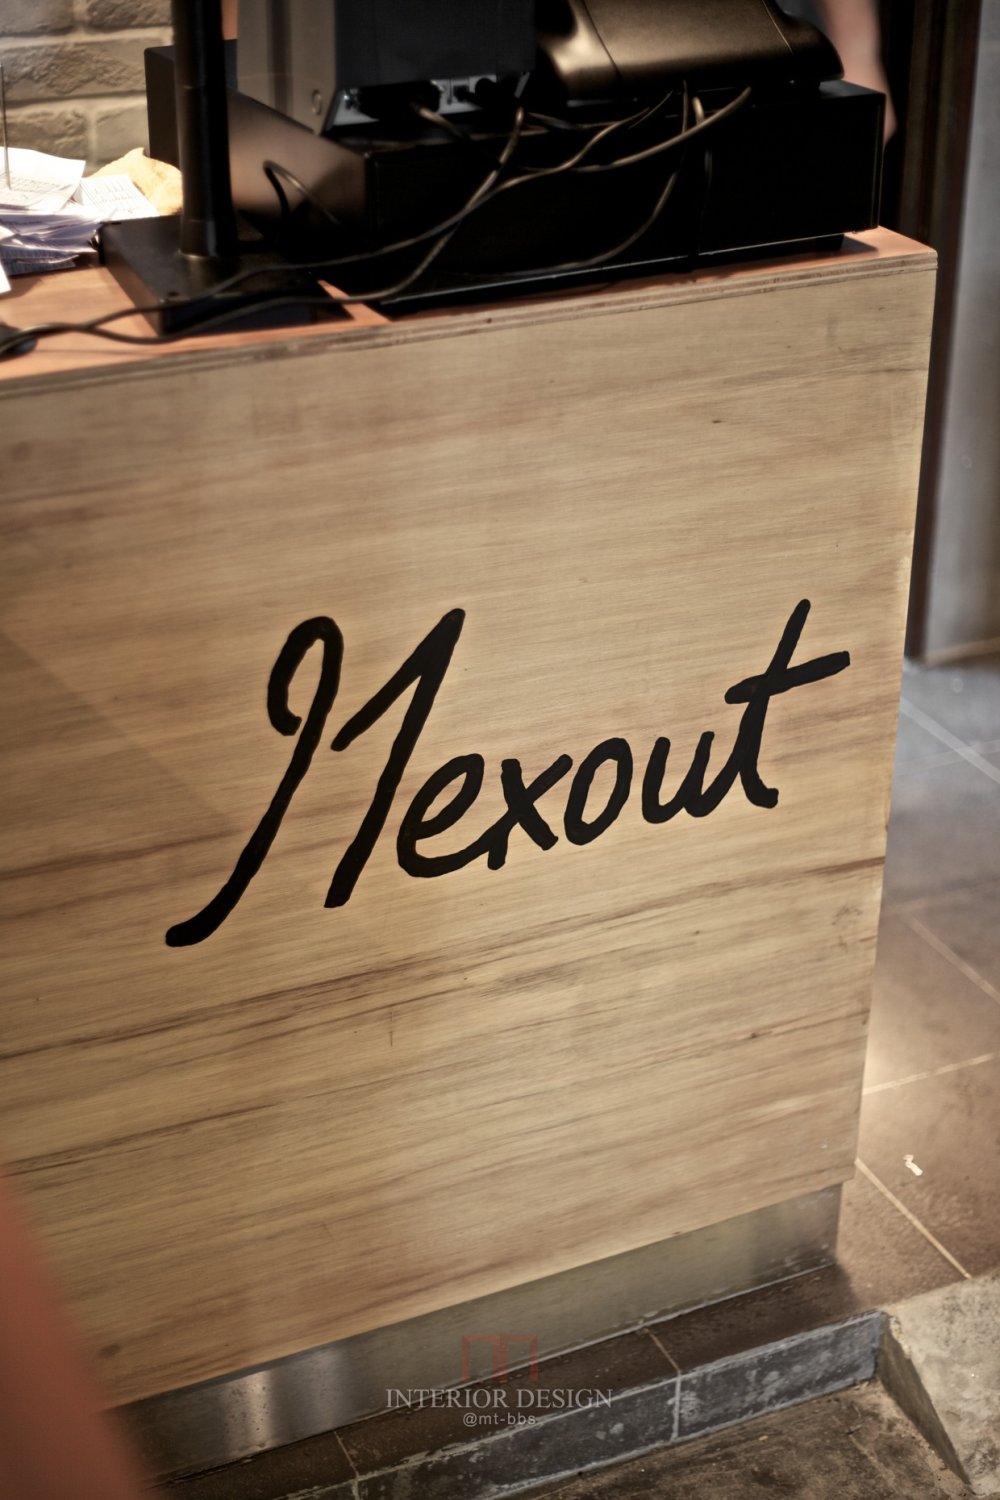 新加坡 Mexout 墨西哥餐厅_1-130616215354312.jpg